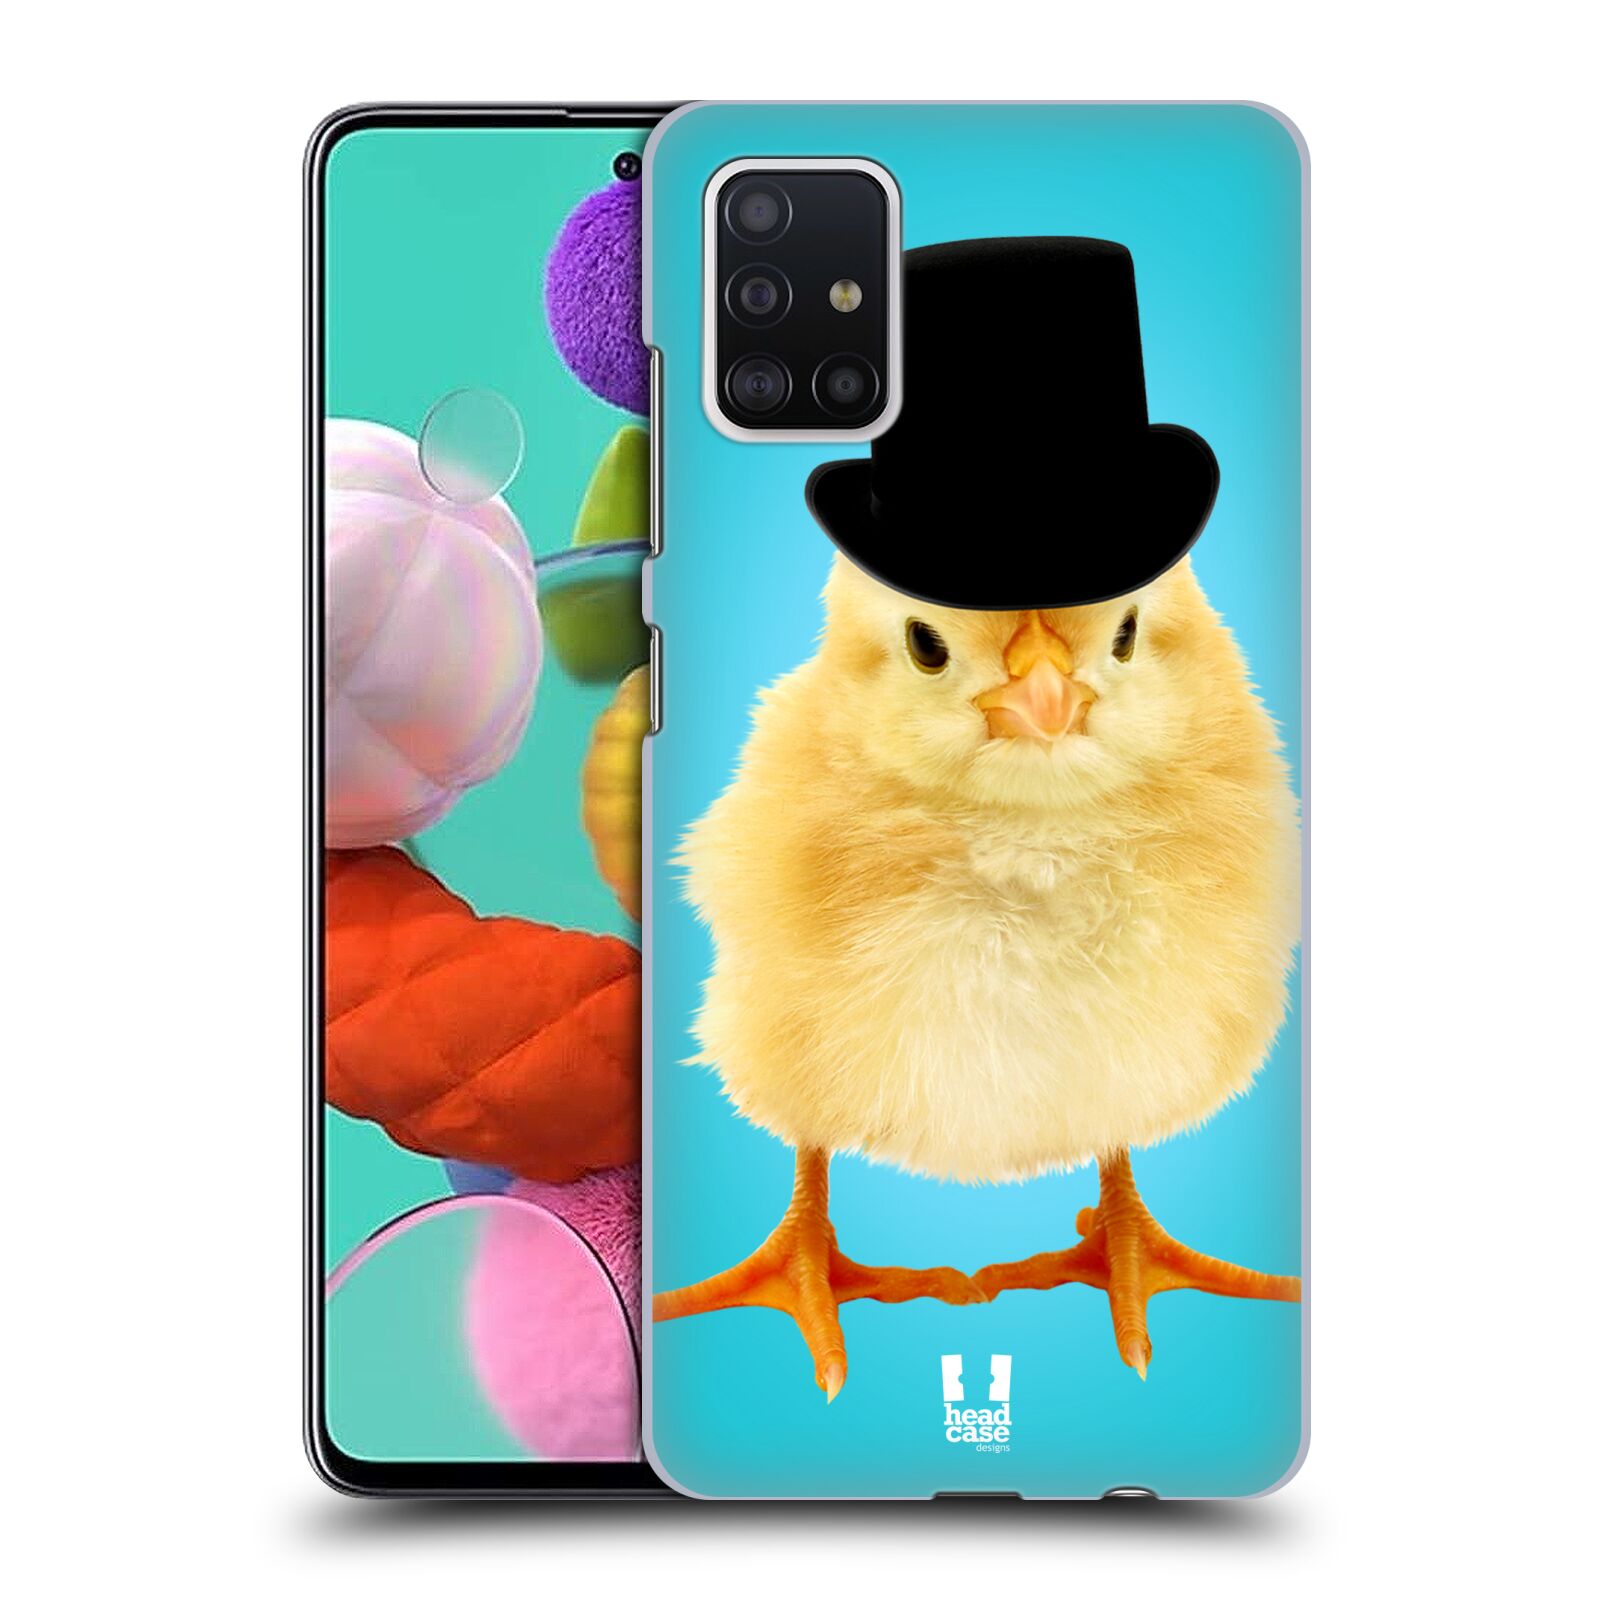 Pouzdro na mobil Samsung Galaxy A51 - HEAD CASE - vzor Legrační zvířátka Mr. kuřátko